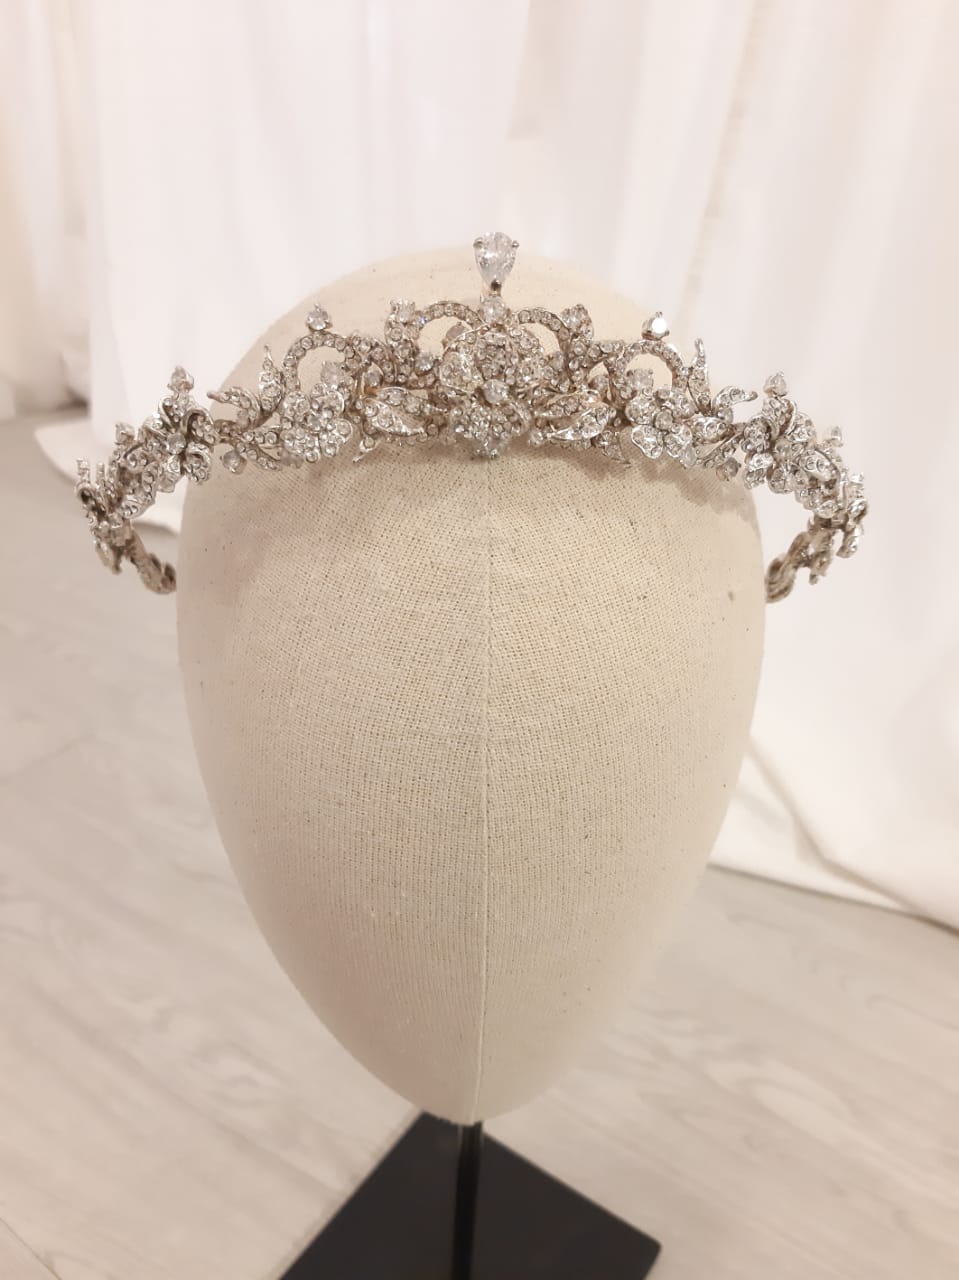 Rent: RINALDY YUNARDI Tiara Crown